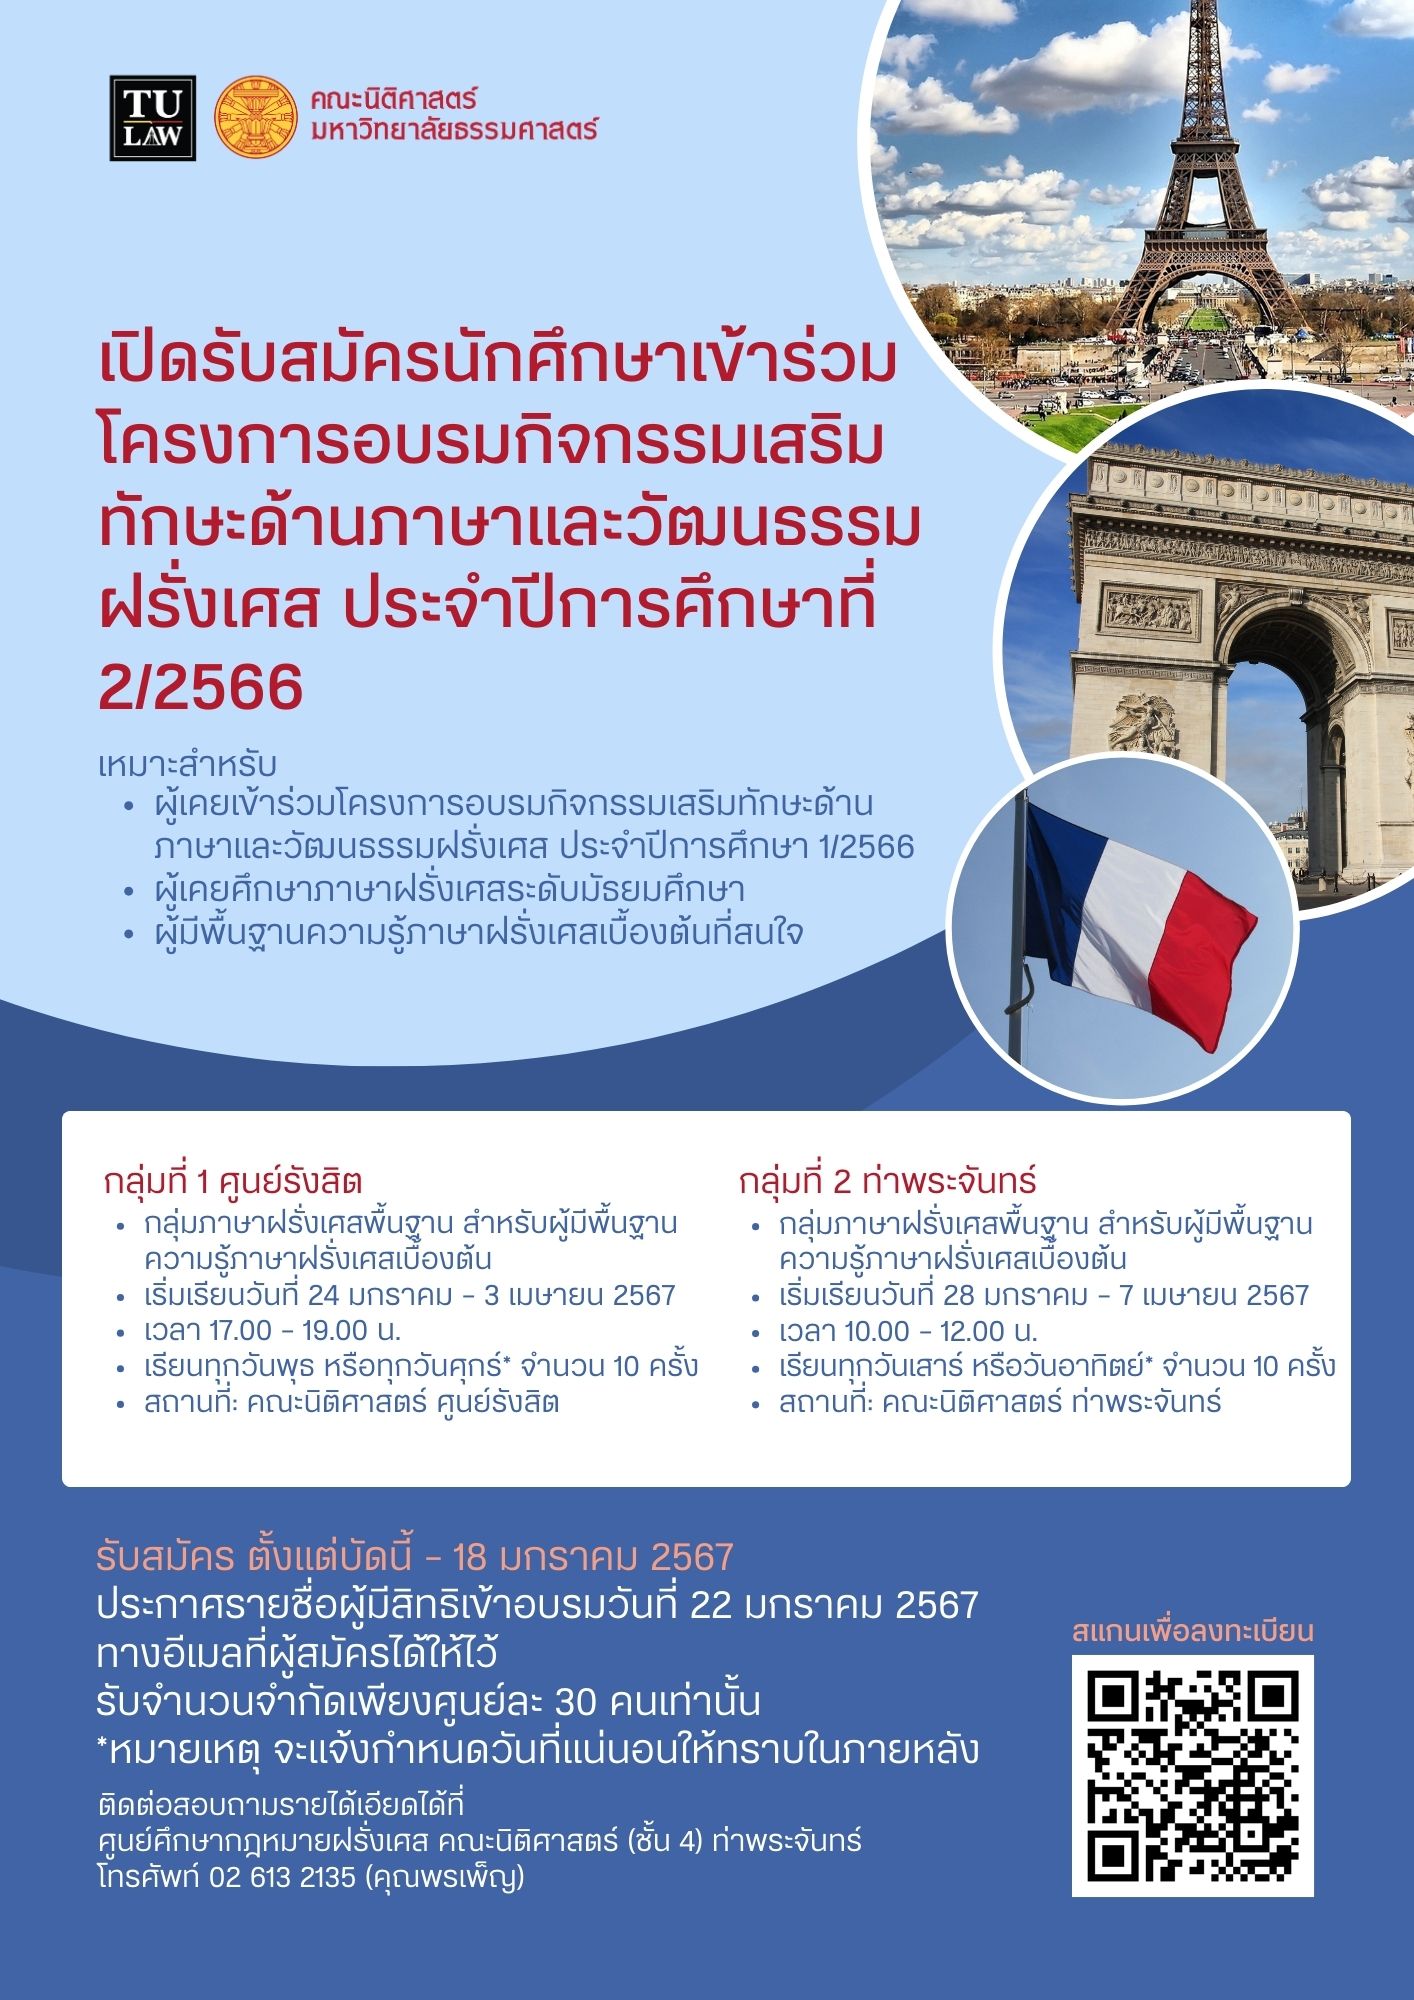 ขอเชิญผู้สนใจเข้าร่วมโครงการกิจกรรมเสริมทักษะด้านภาษาและวัฒนธรรมฝรั่งเศส ภาคการศึกษาที่ 2/2567